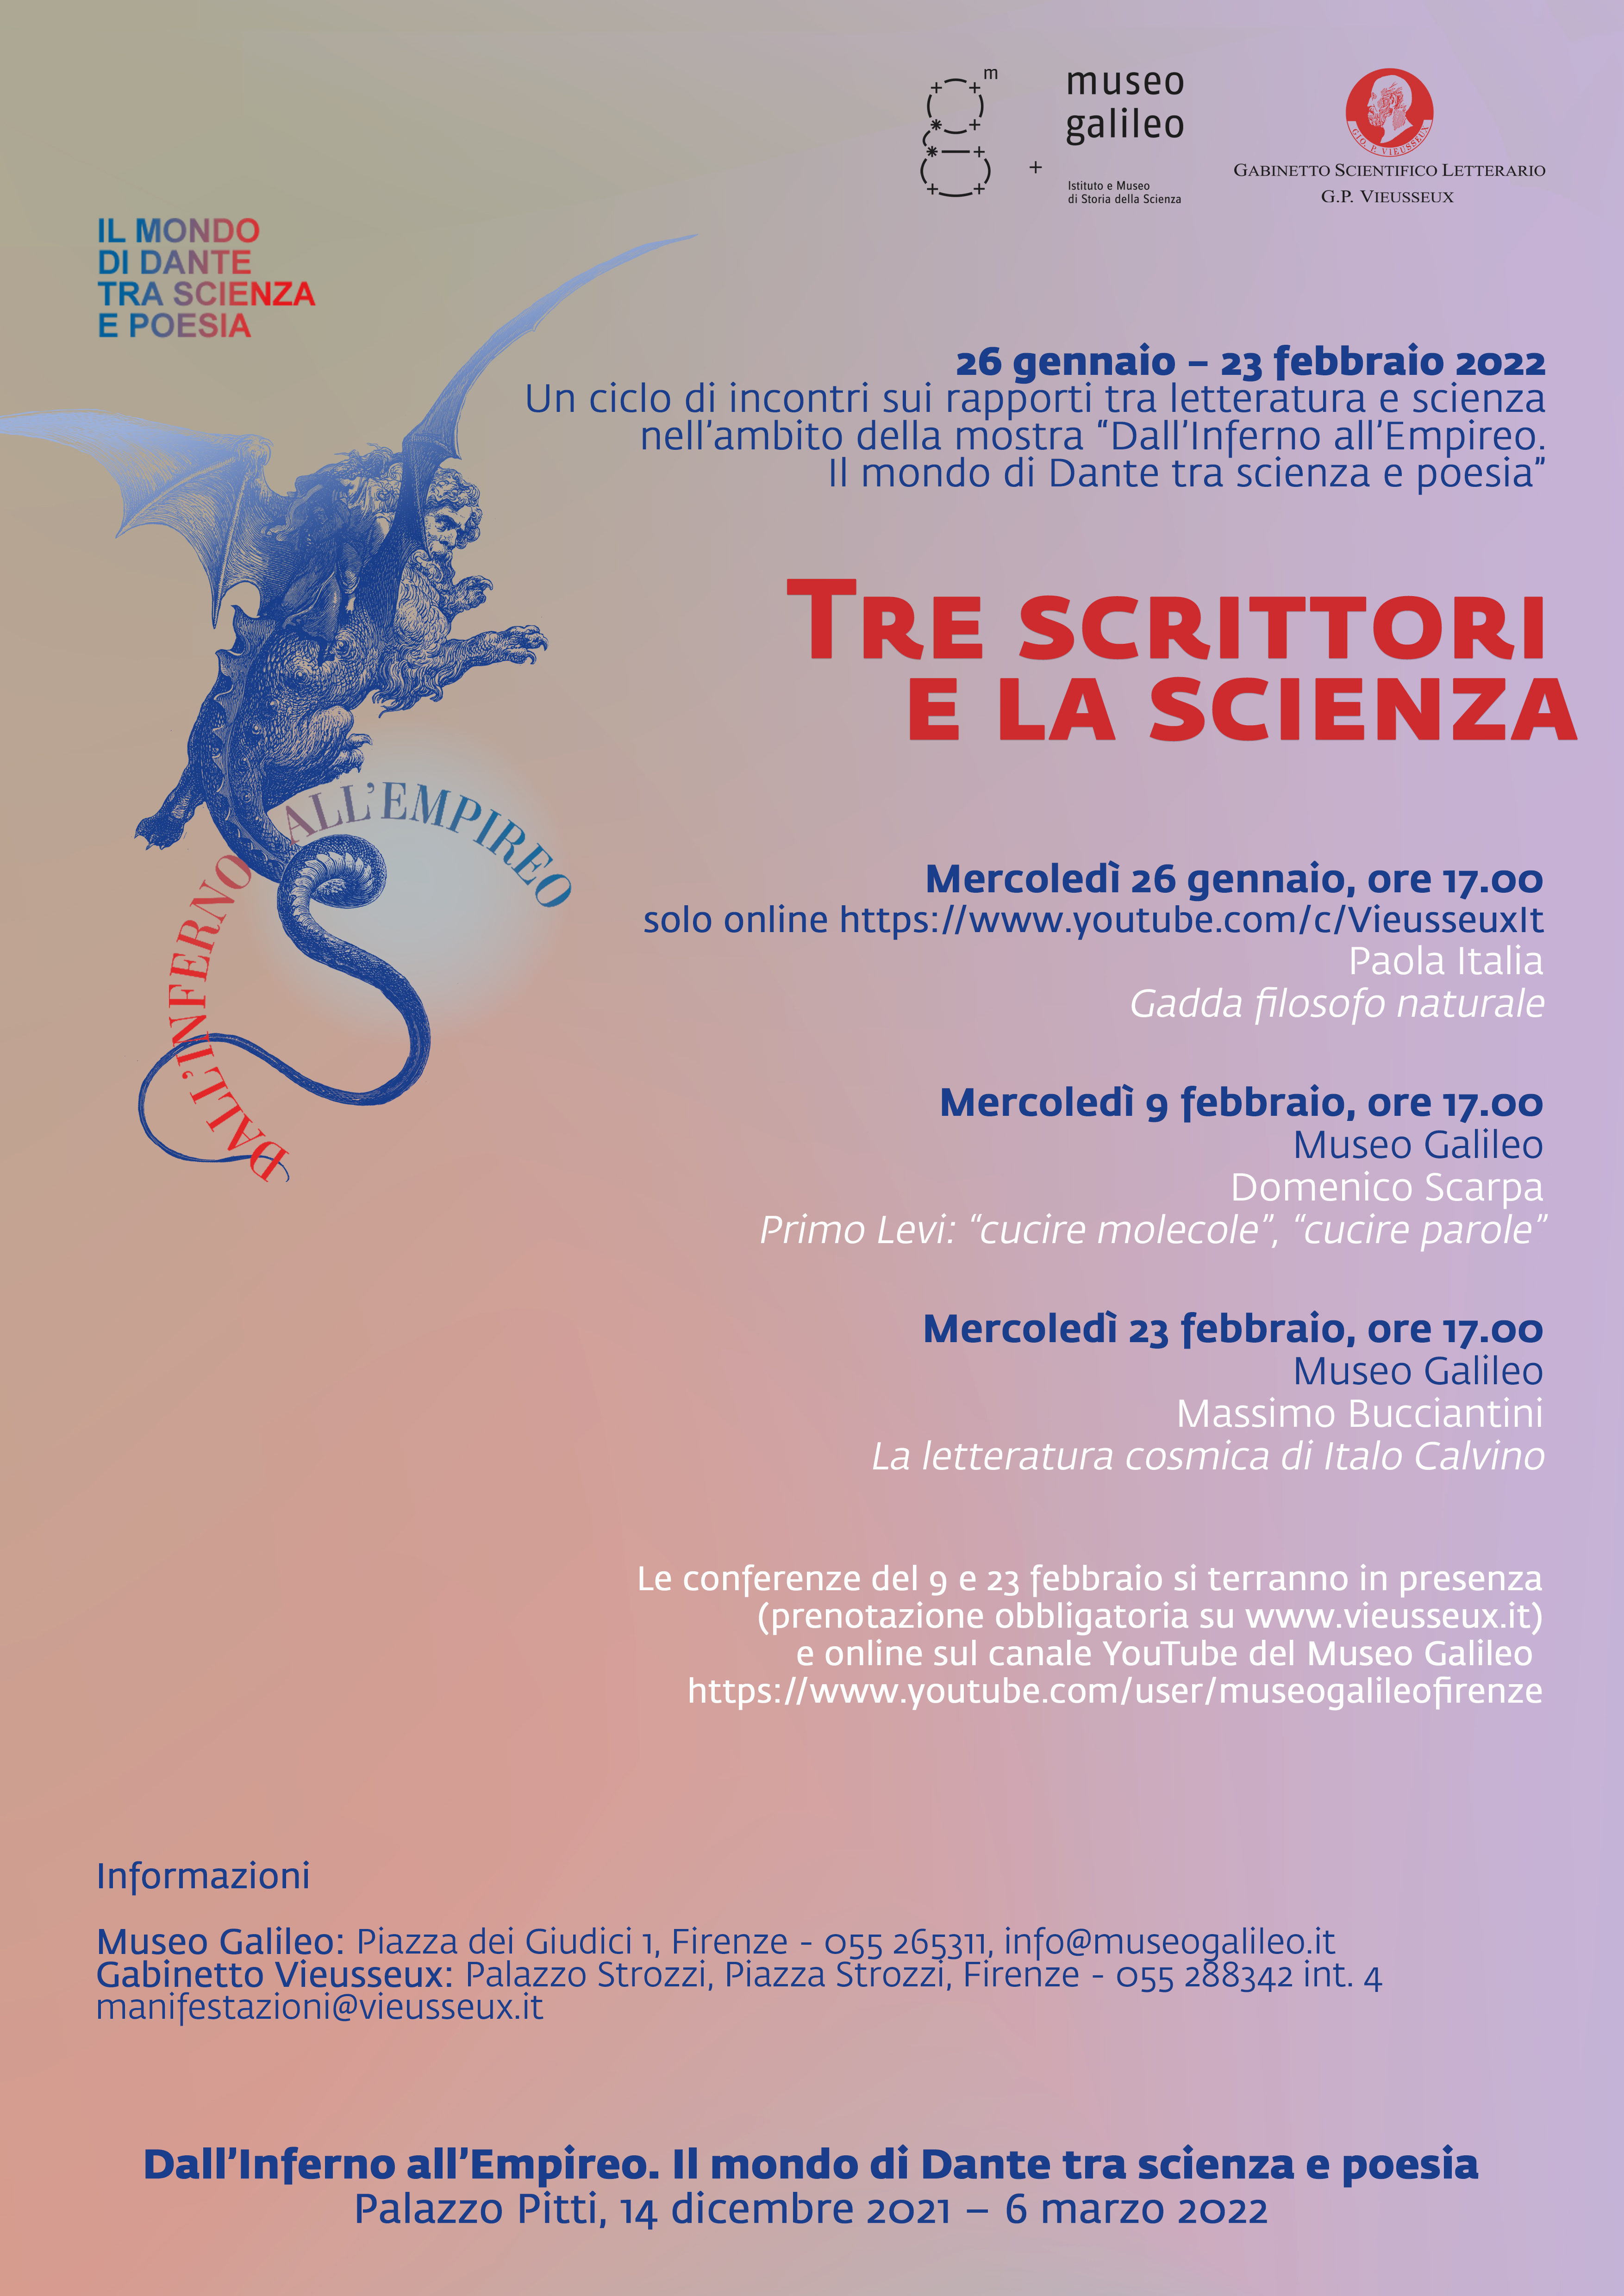 TRE SCRITTORI E LA SCIENZA - Ciclo di conferenze 26 gennaio-23 febbraio 2022